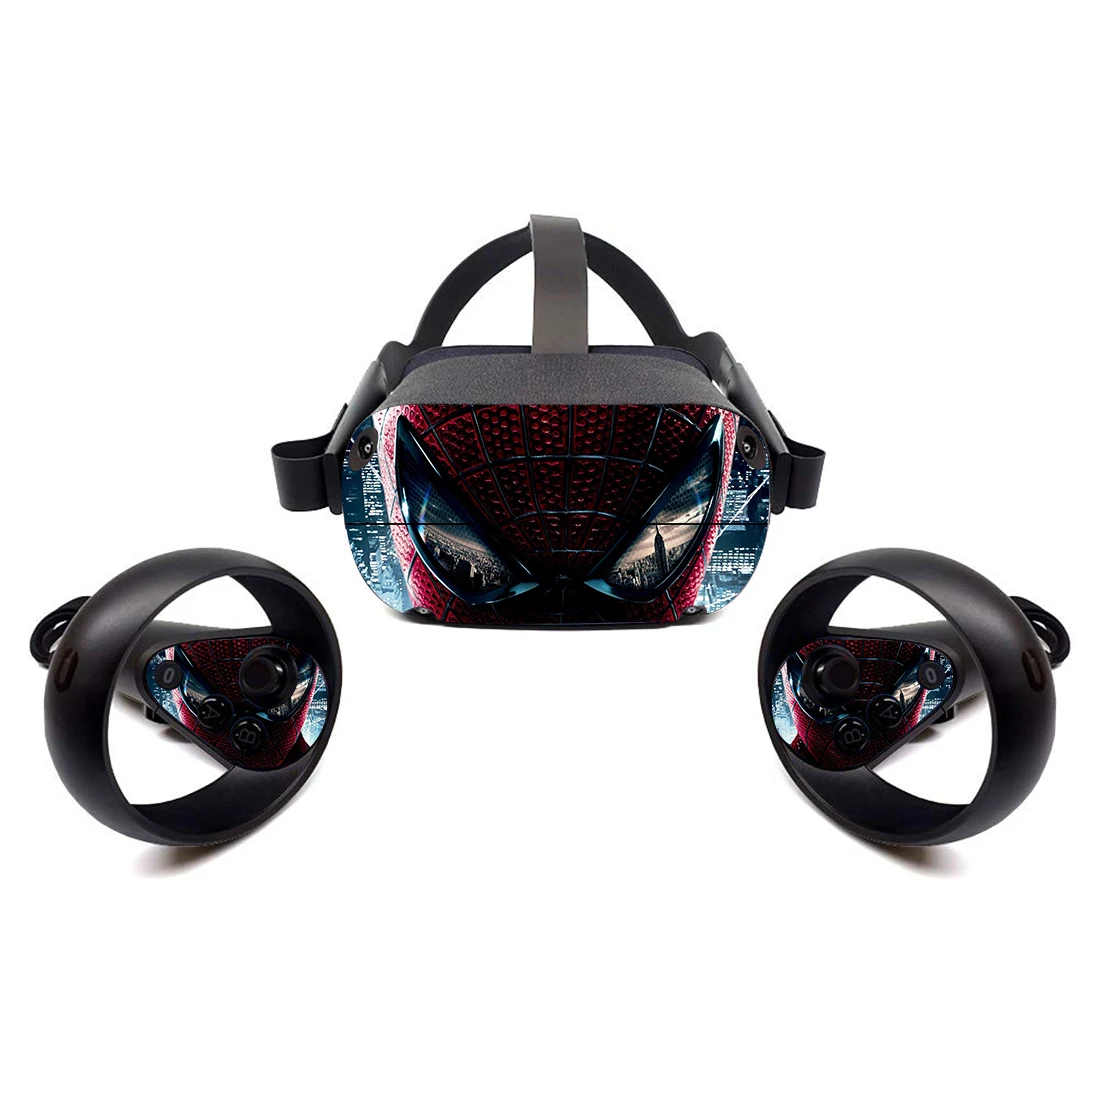 Deadpool Face mask skin sticker for Oculus Go VR headset